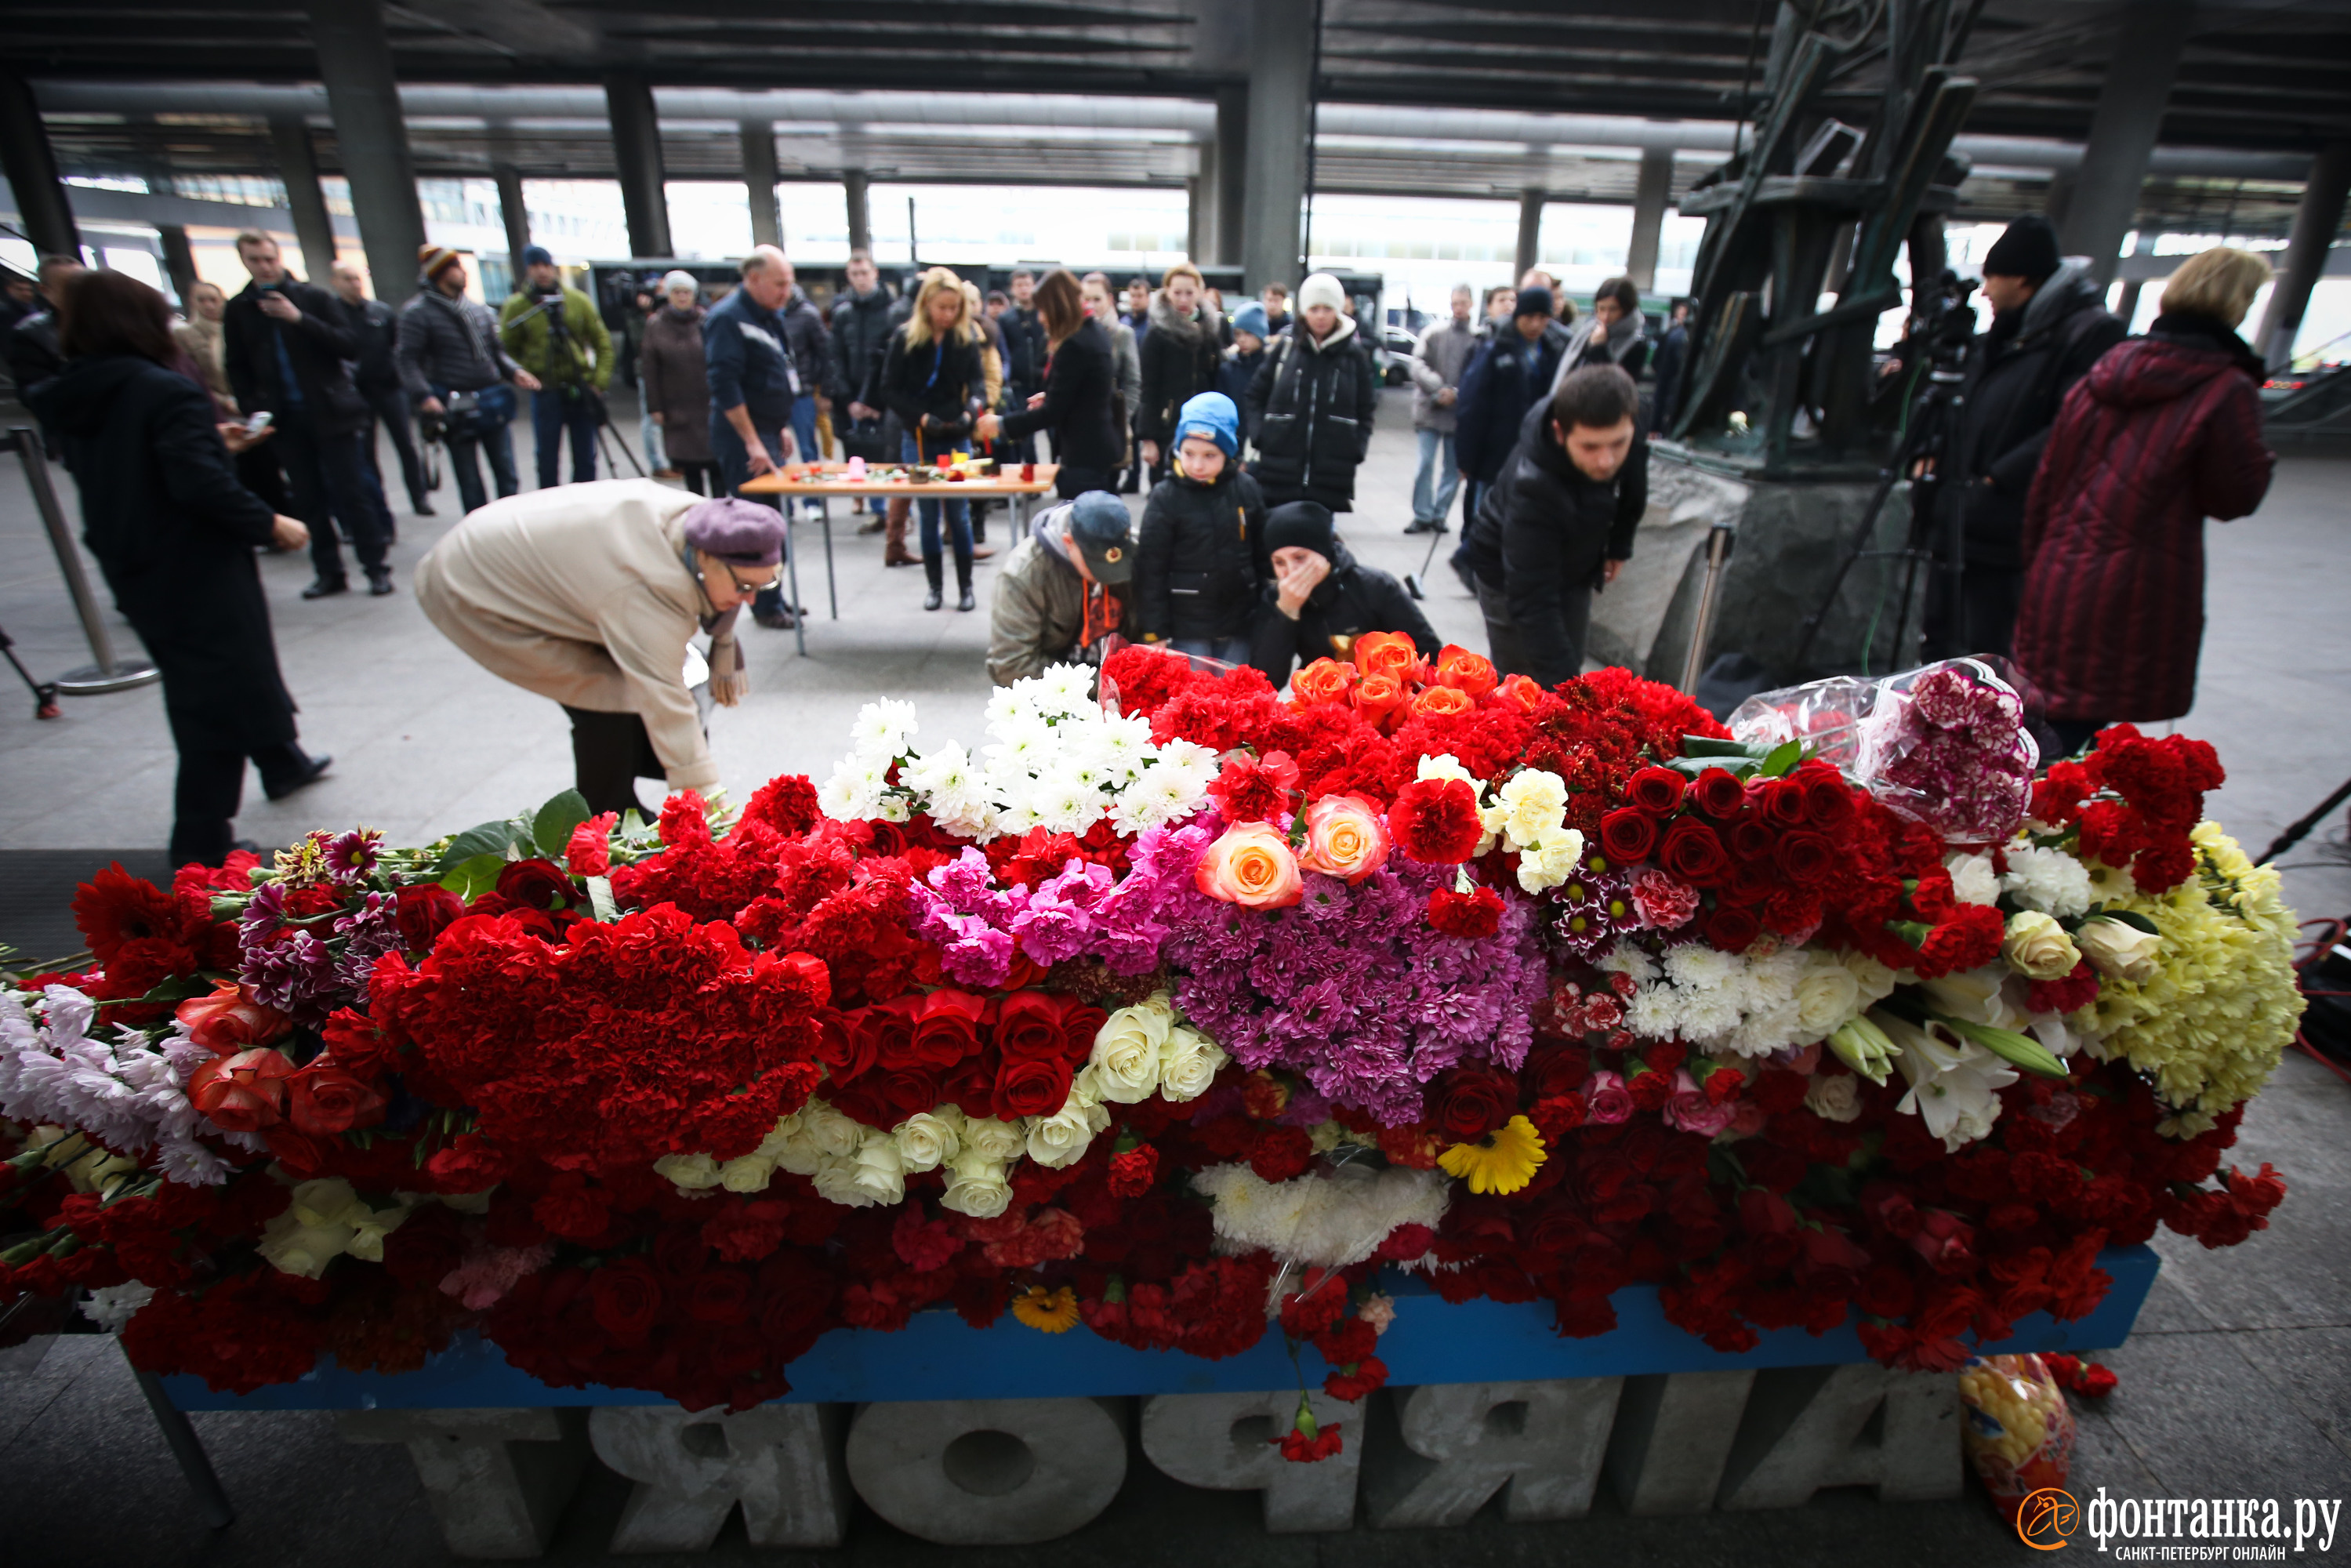 Весь день в Пулково несли цветы, чтобы почтить память погибших в авиакатастрофе